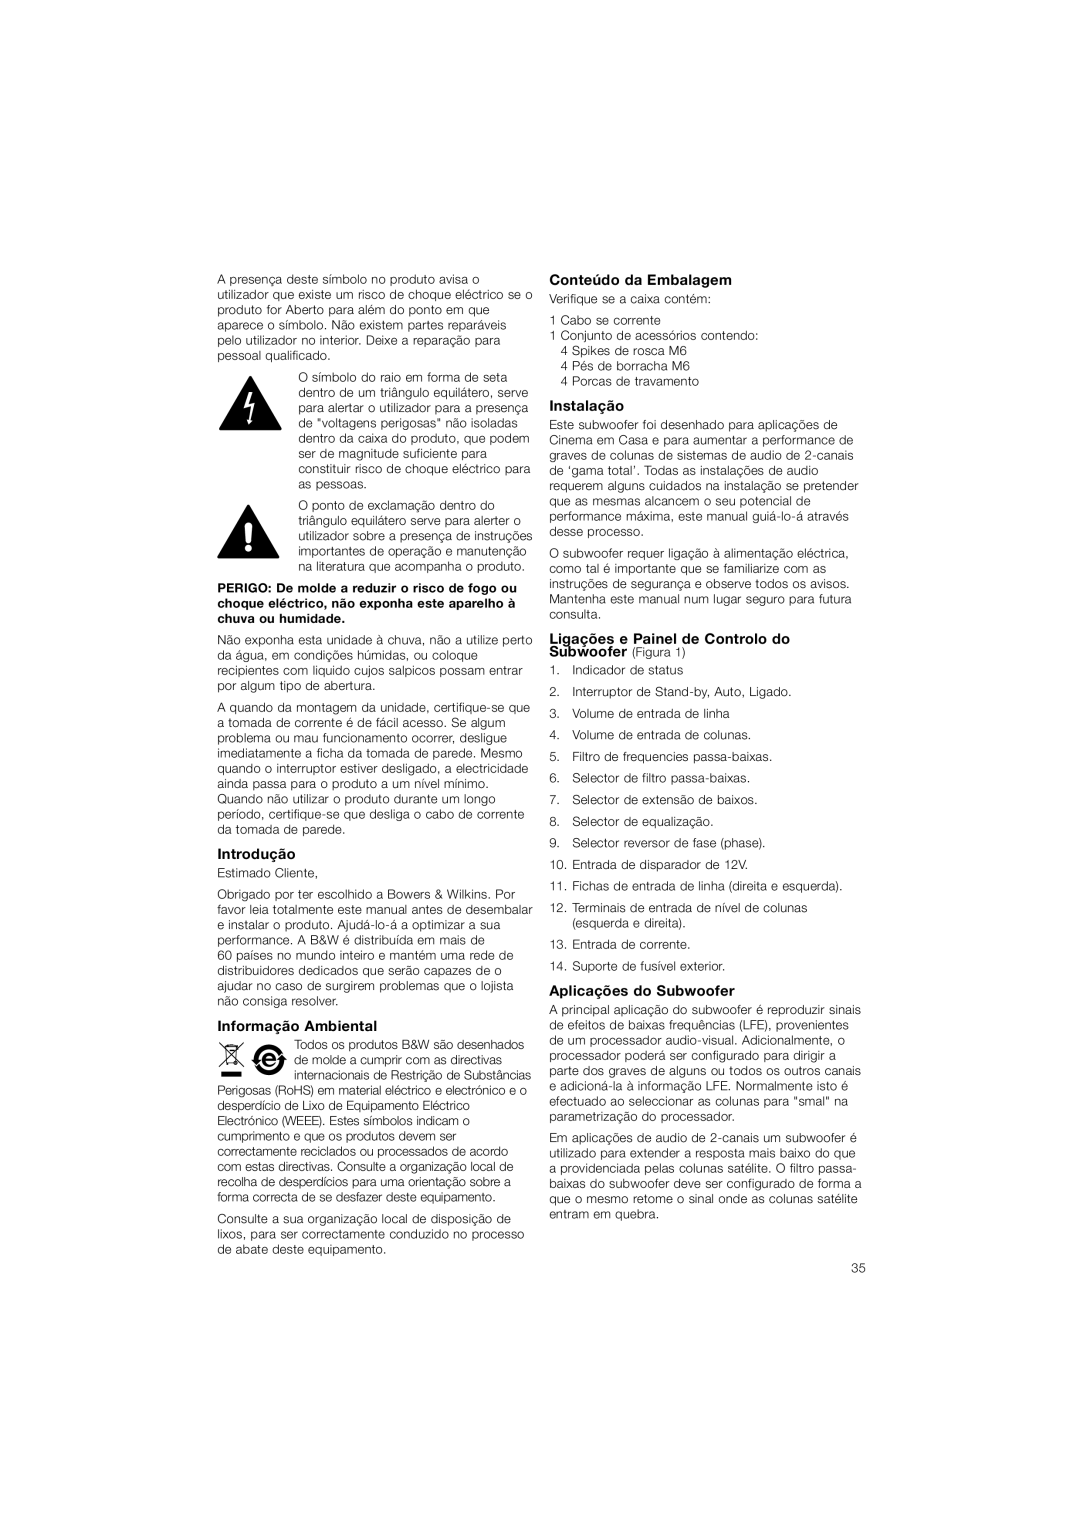 Bowers & Wilkins ASW610XP Introdução, Informação Ambiental, Conteúdo da Embalagem, Instalação, Aplicações do Subwoofer 